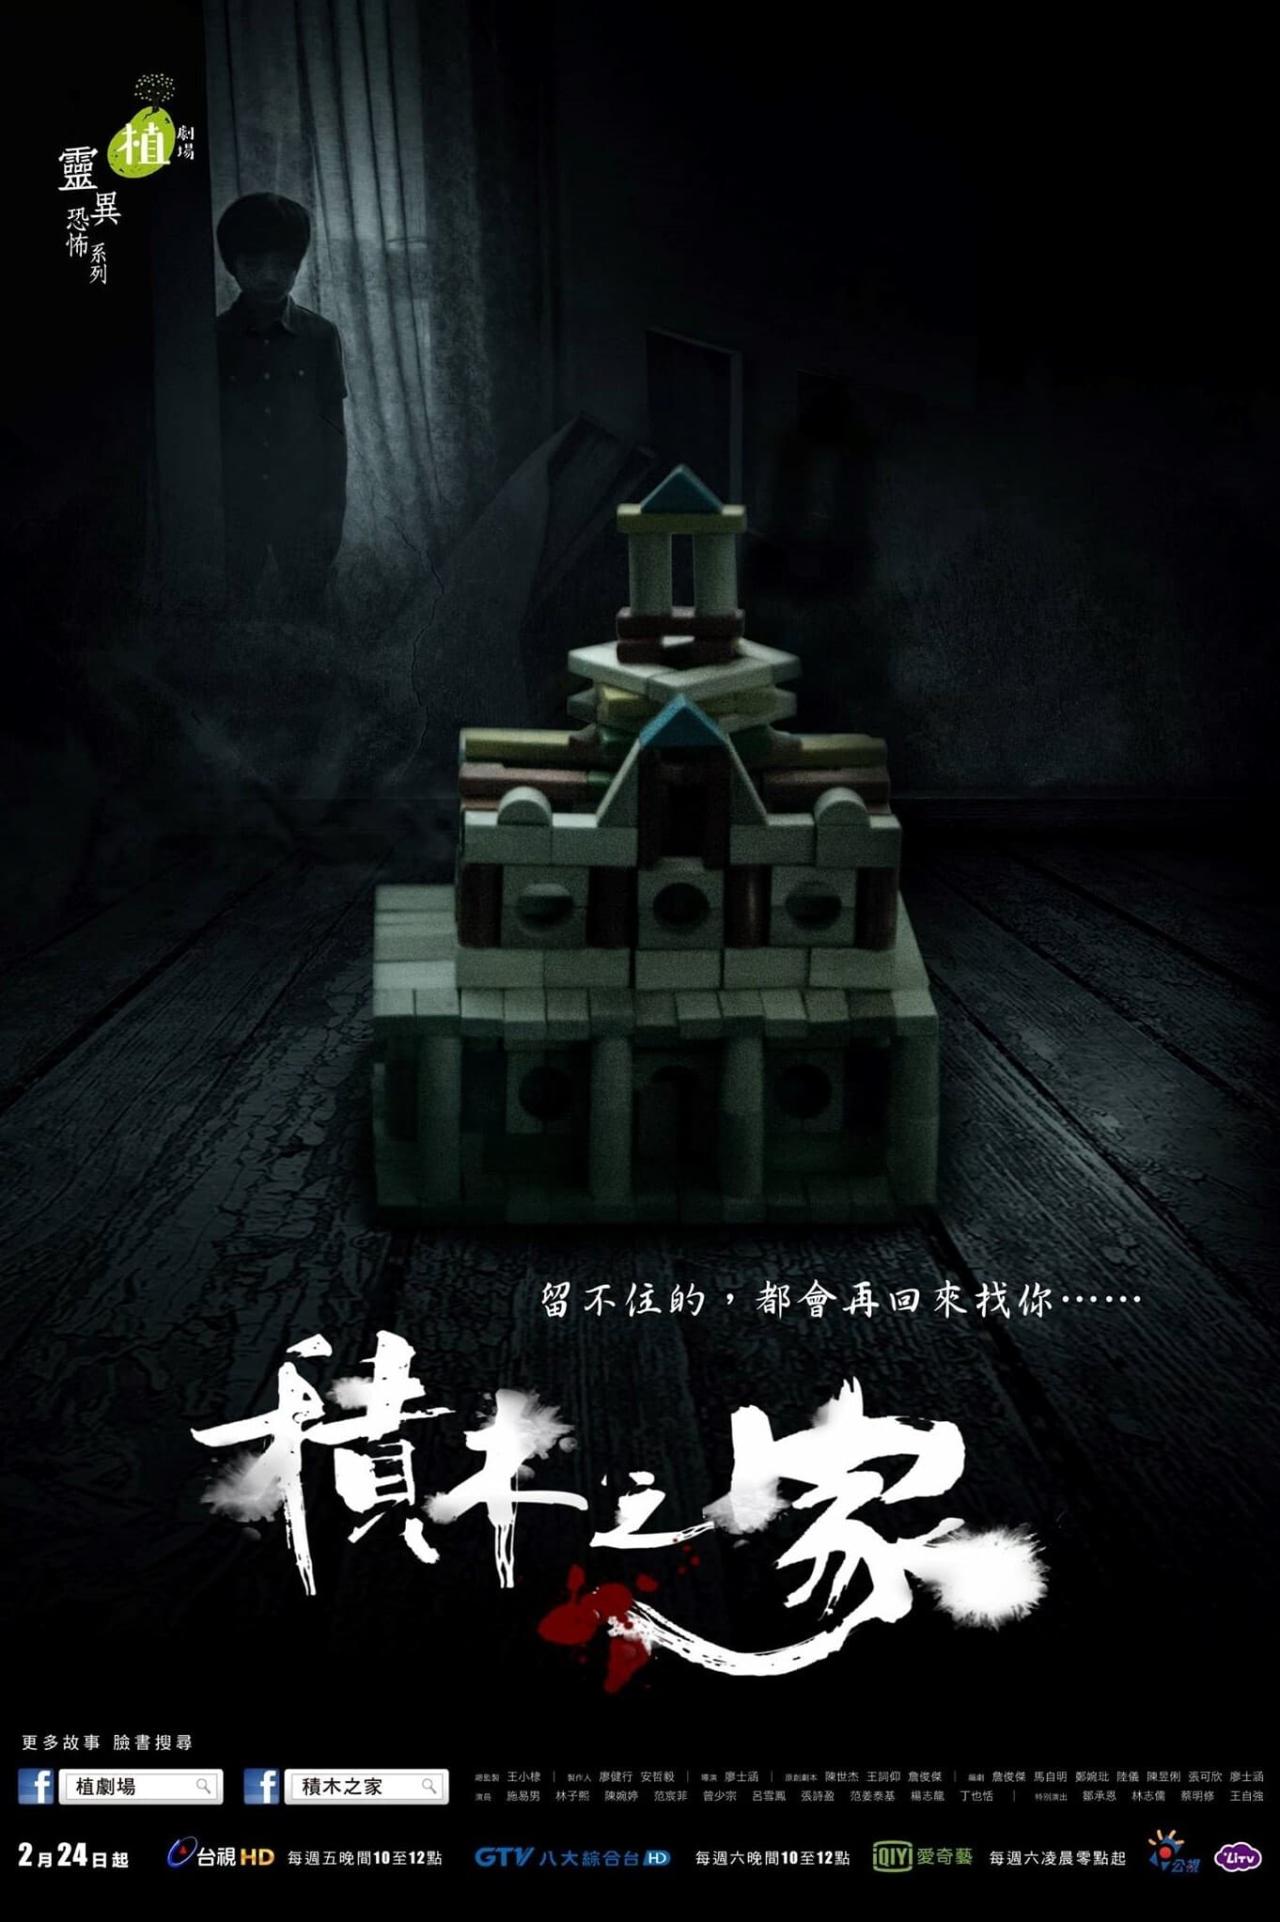 Les saisons de 植劇場－積木之家 sont-elles disponibles sur Netflix ou autre ?